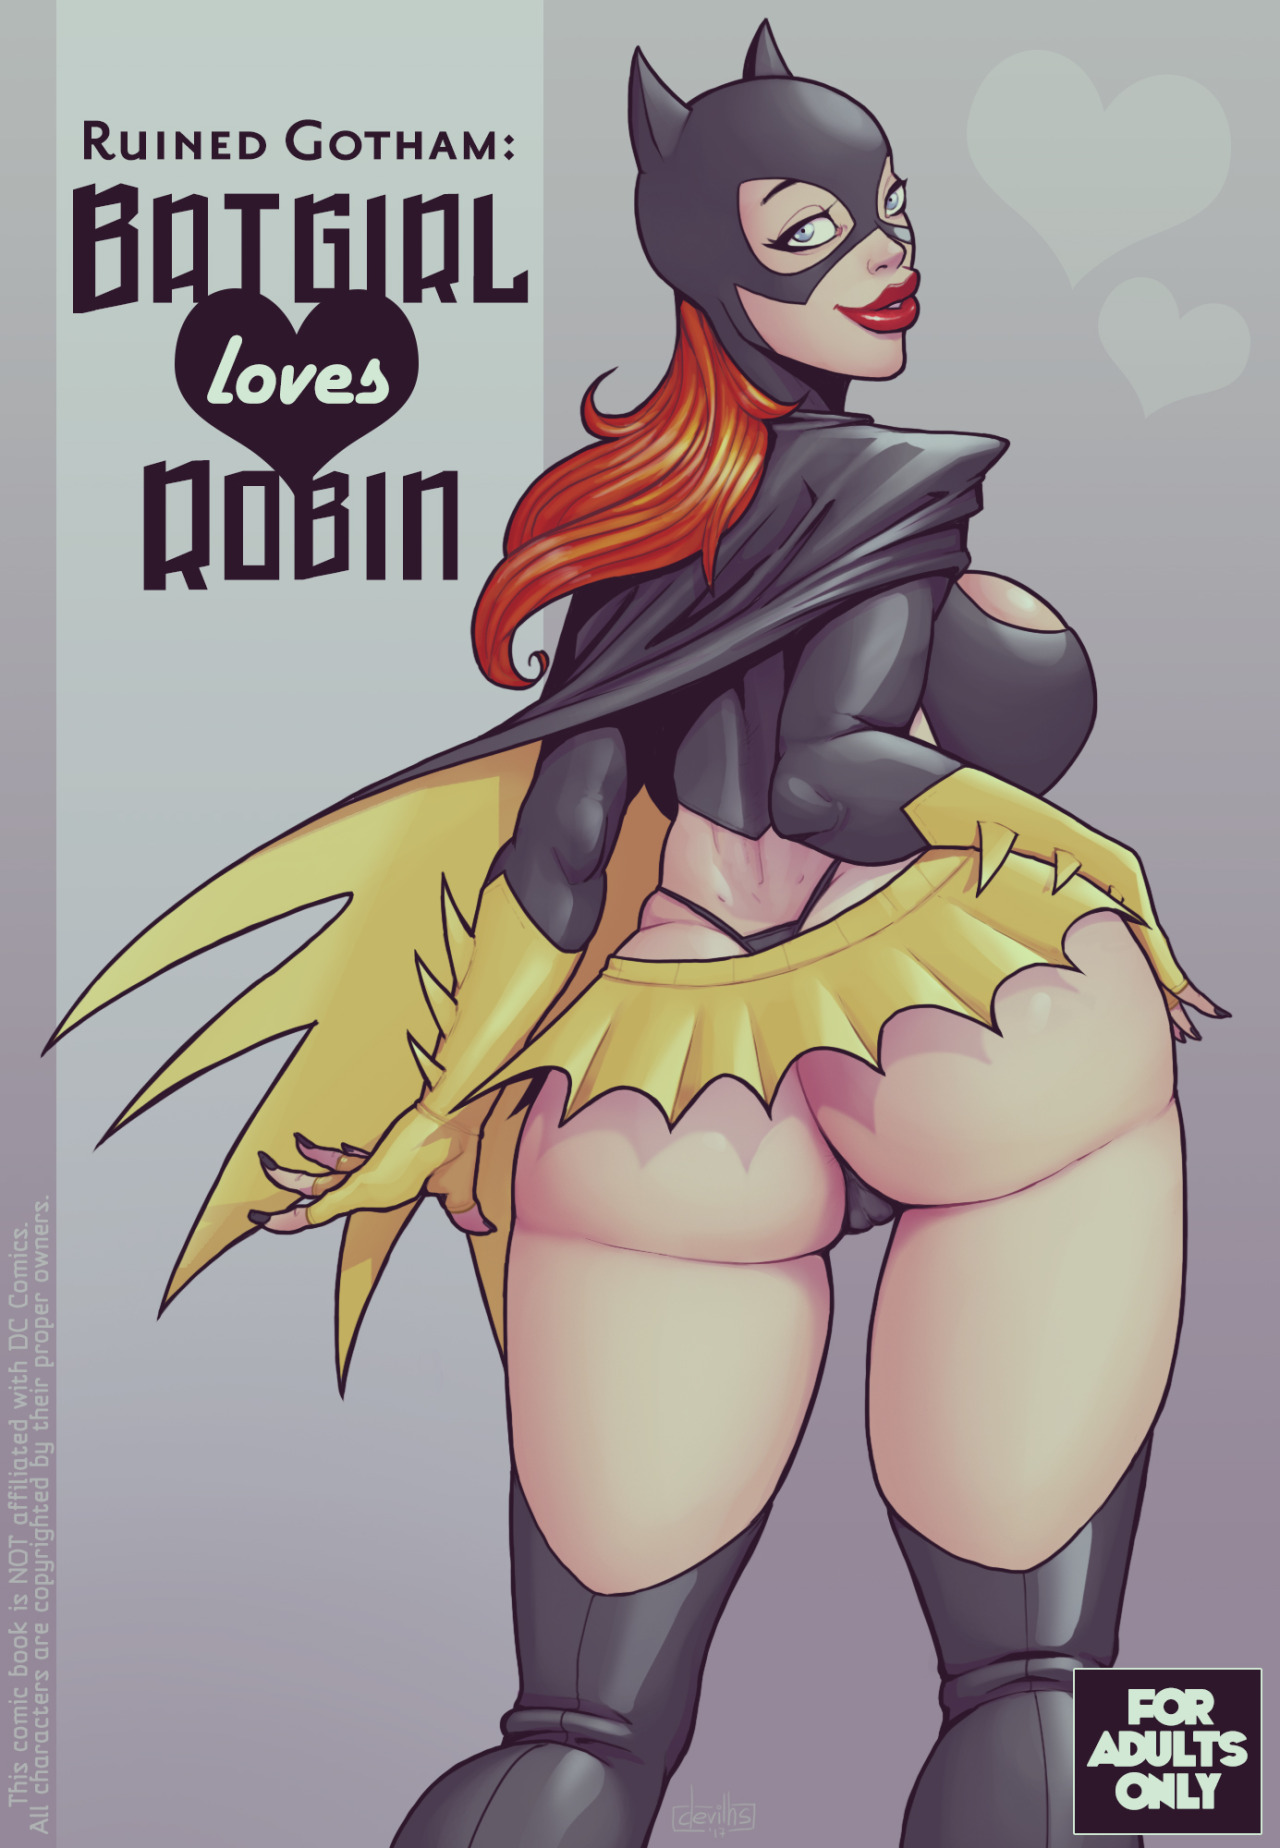 DevilHS - Ruined Gotham - Batgirl loves Robin